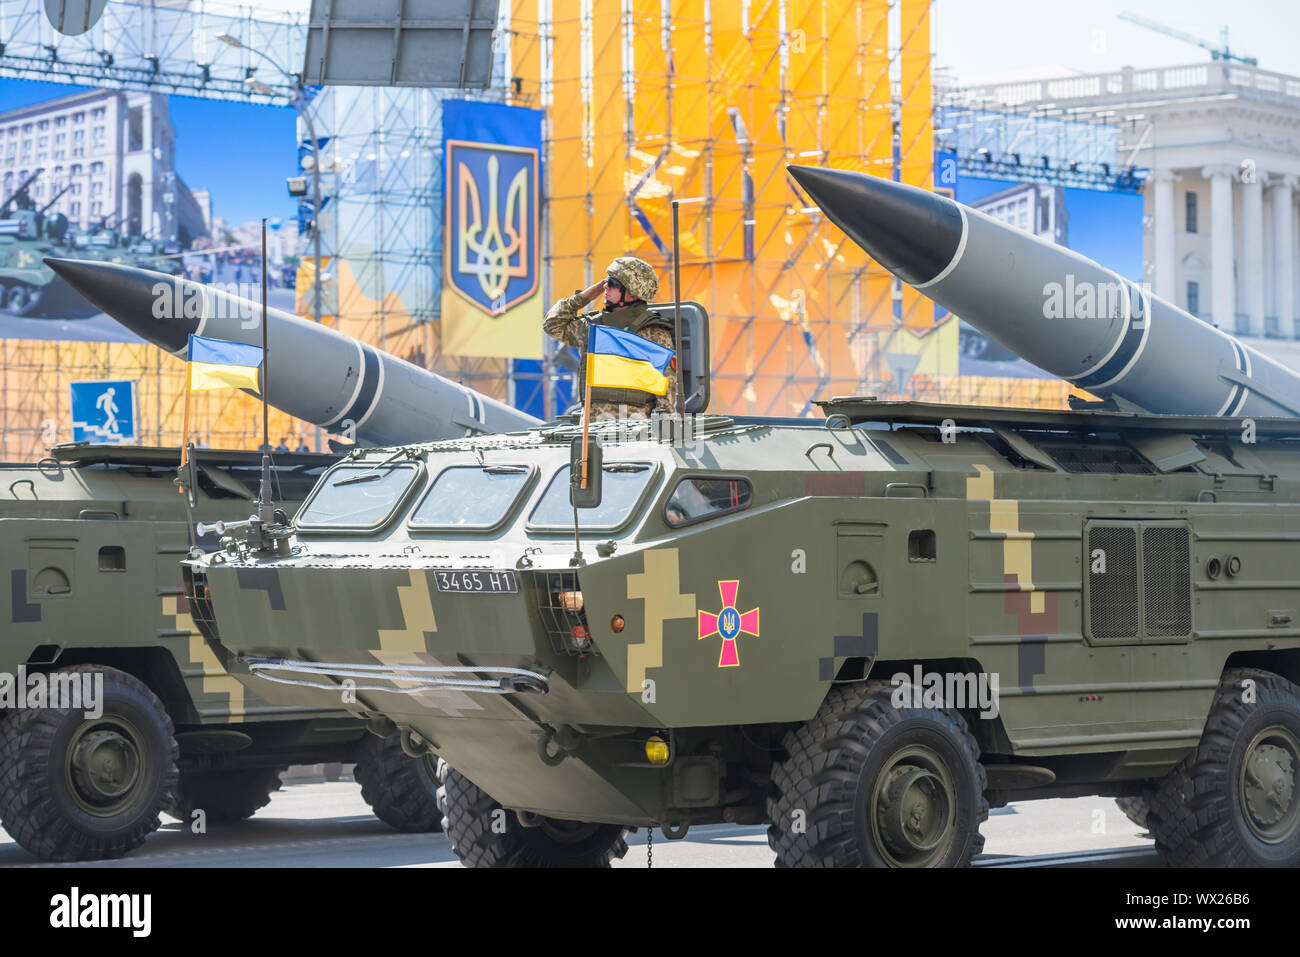 Military parade in Kiev, Ukraine Stock Photo